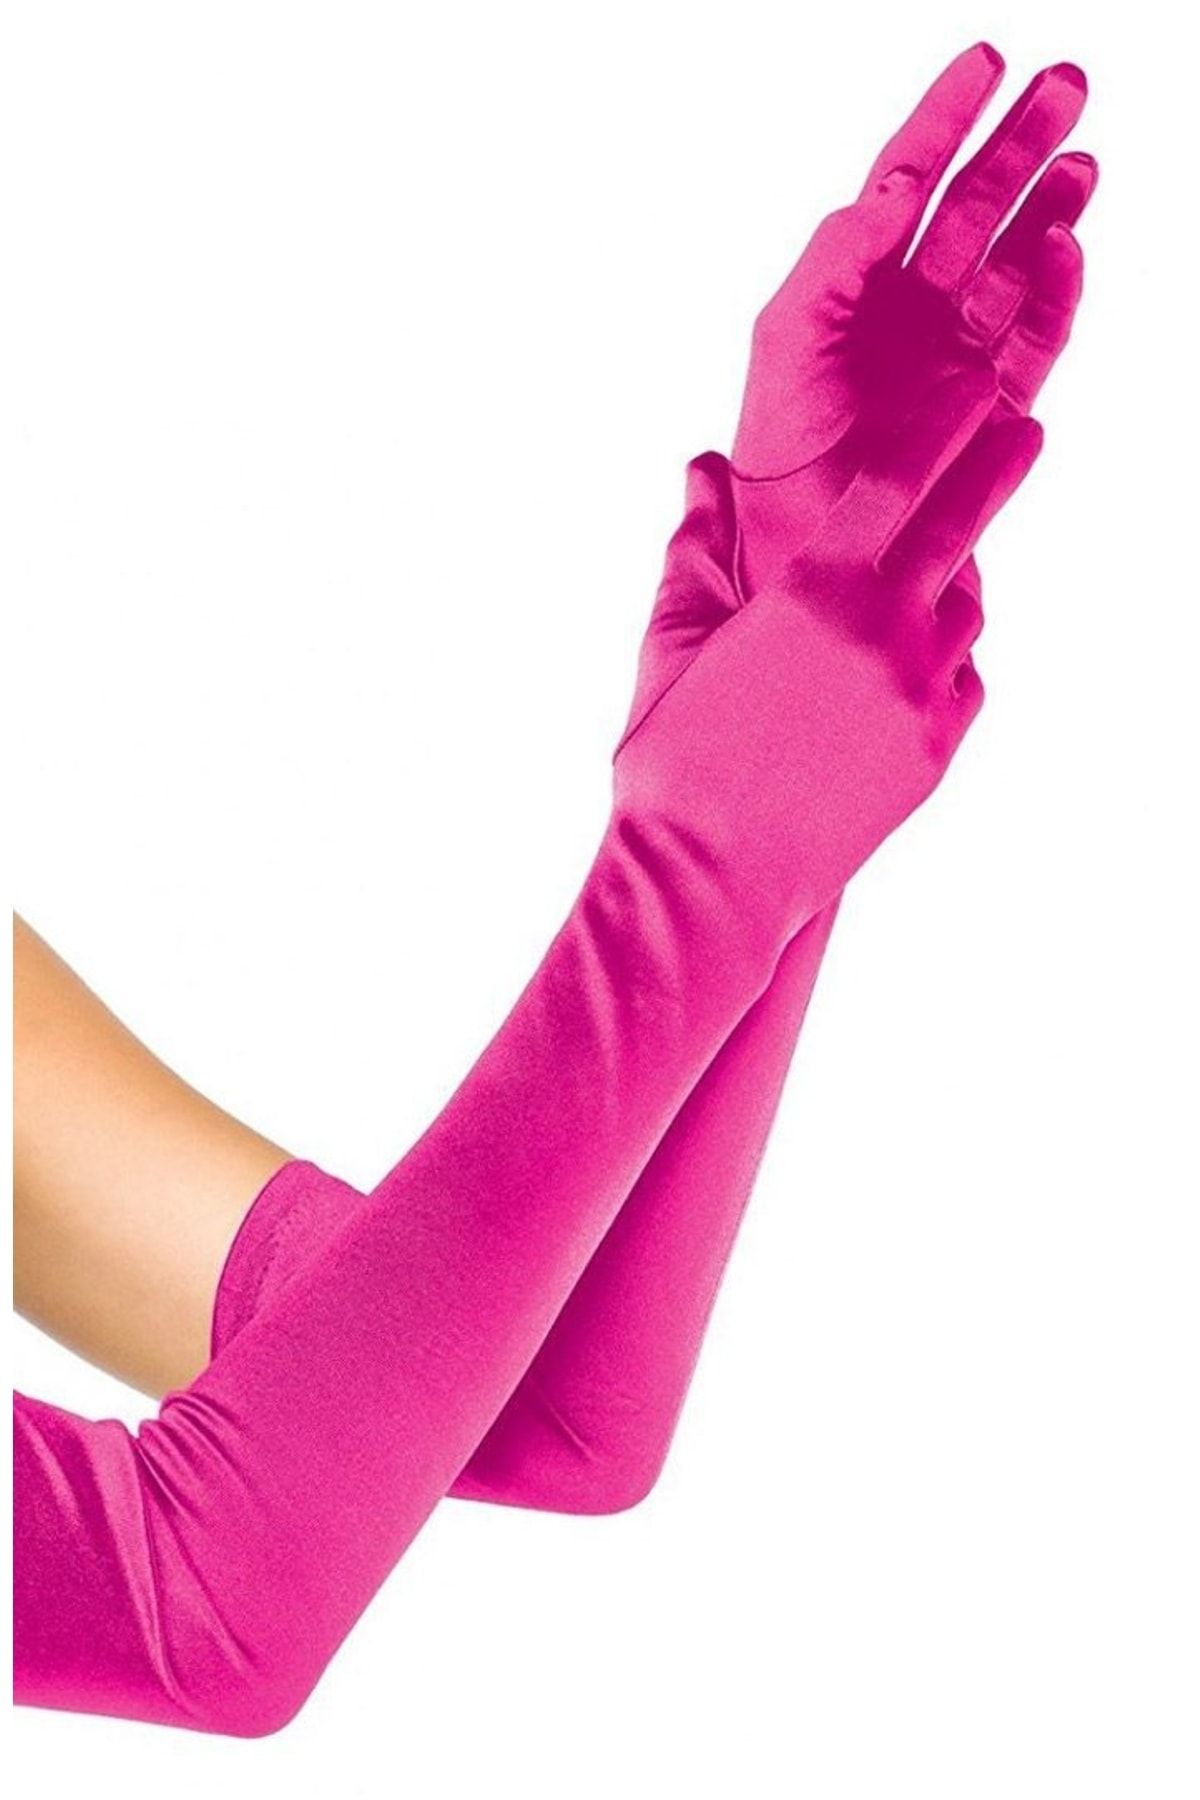 Купить розовые перчатки. Перчатки атласные длинные. Розовые перчатки женские. Длинные розовые перчатки. Яркие длинные перчатки.